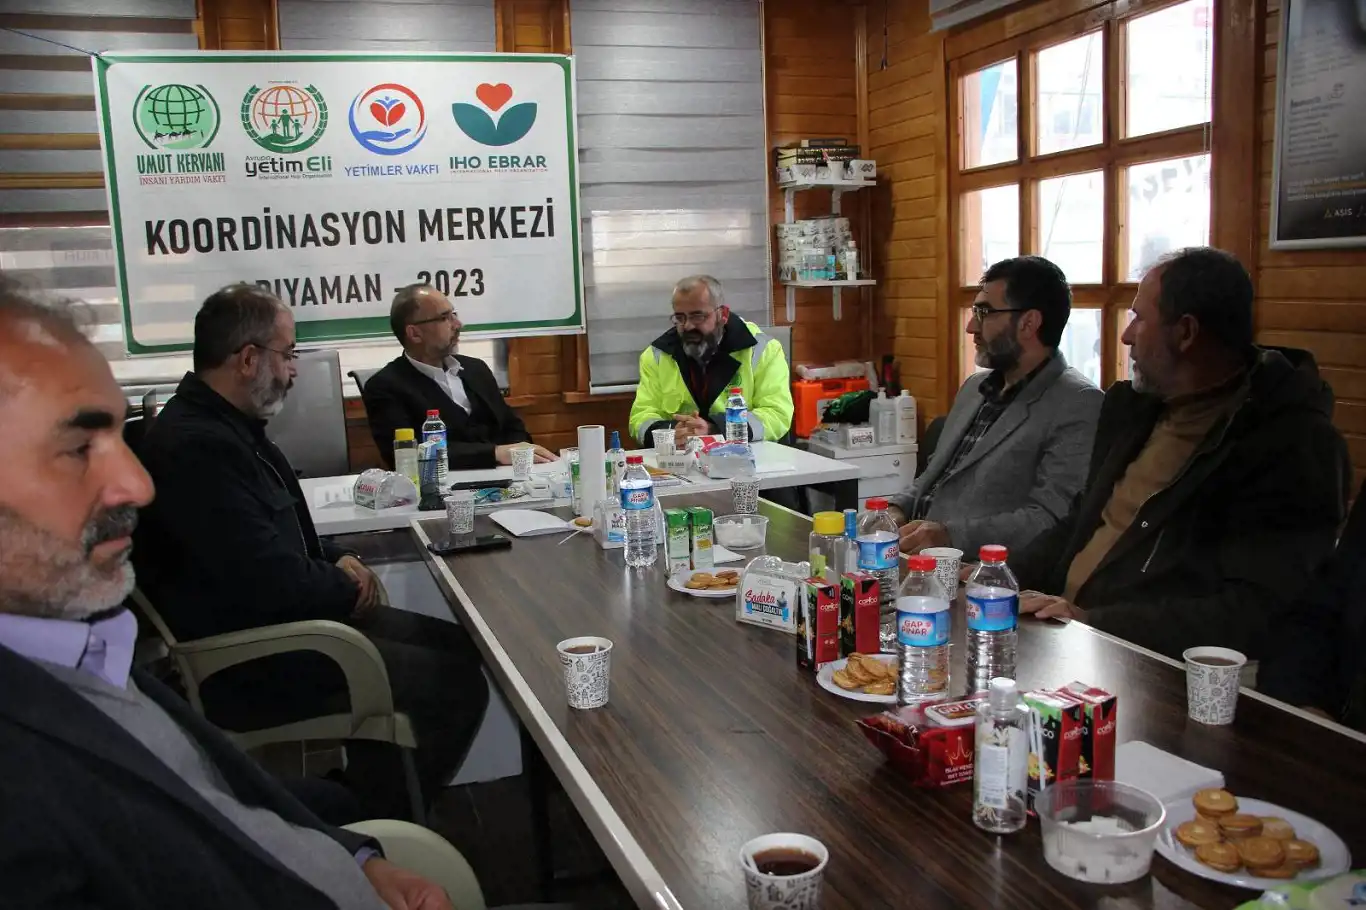 HÜDA PAR Genel Başkan Vekili İshak Sağlam'dan Adıyaman'daki Umut Kervanı Koordinasyon Merkezine ziyaret